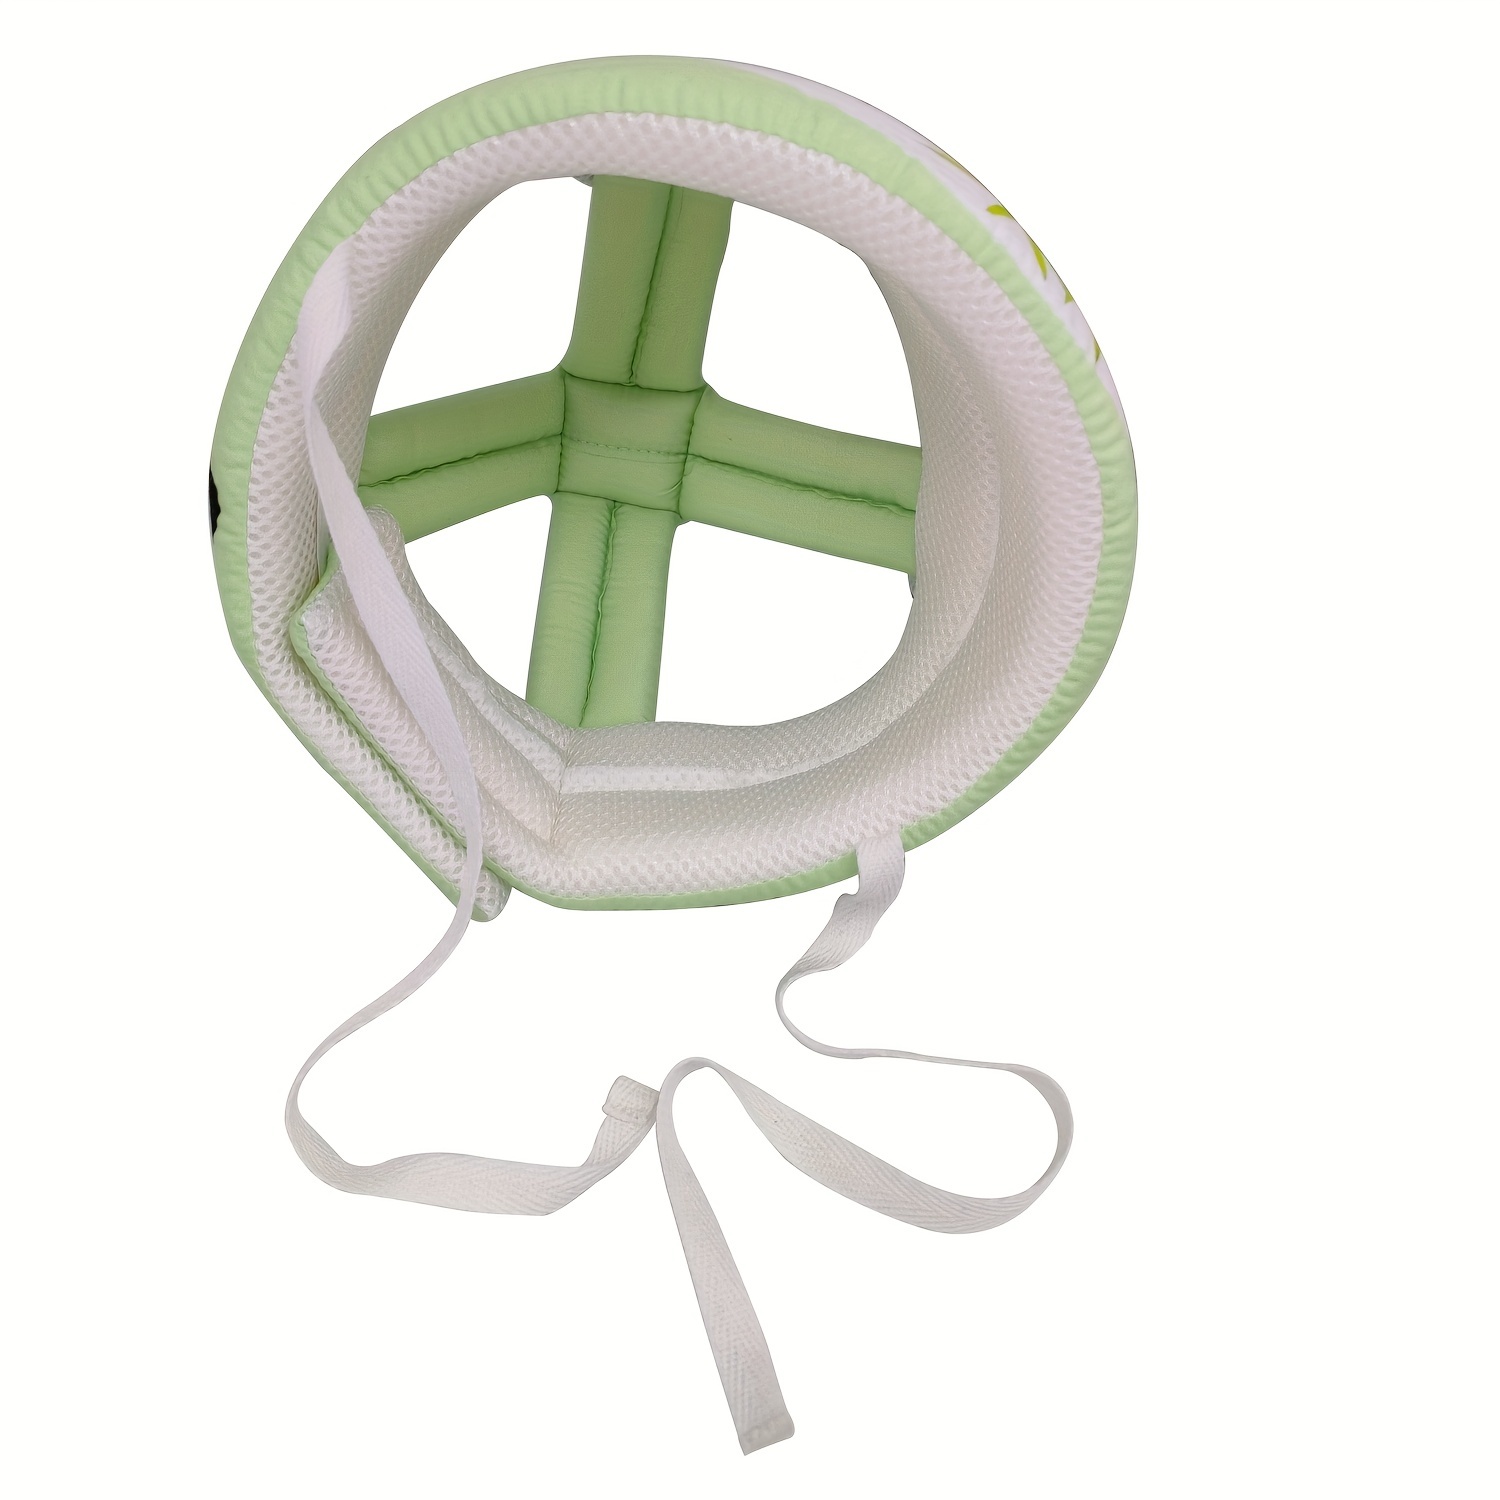  Casco de seguridad para bebé infantil transpirable y ajustable,  cojín para la cabeza, para correr, caminar y gatear (verde), BB-1003 verde  : Bebés